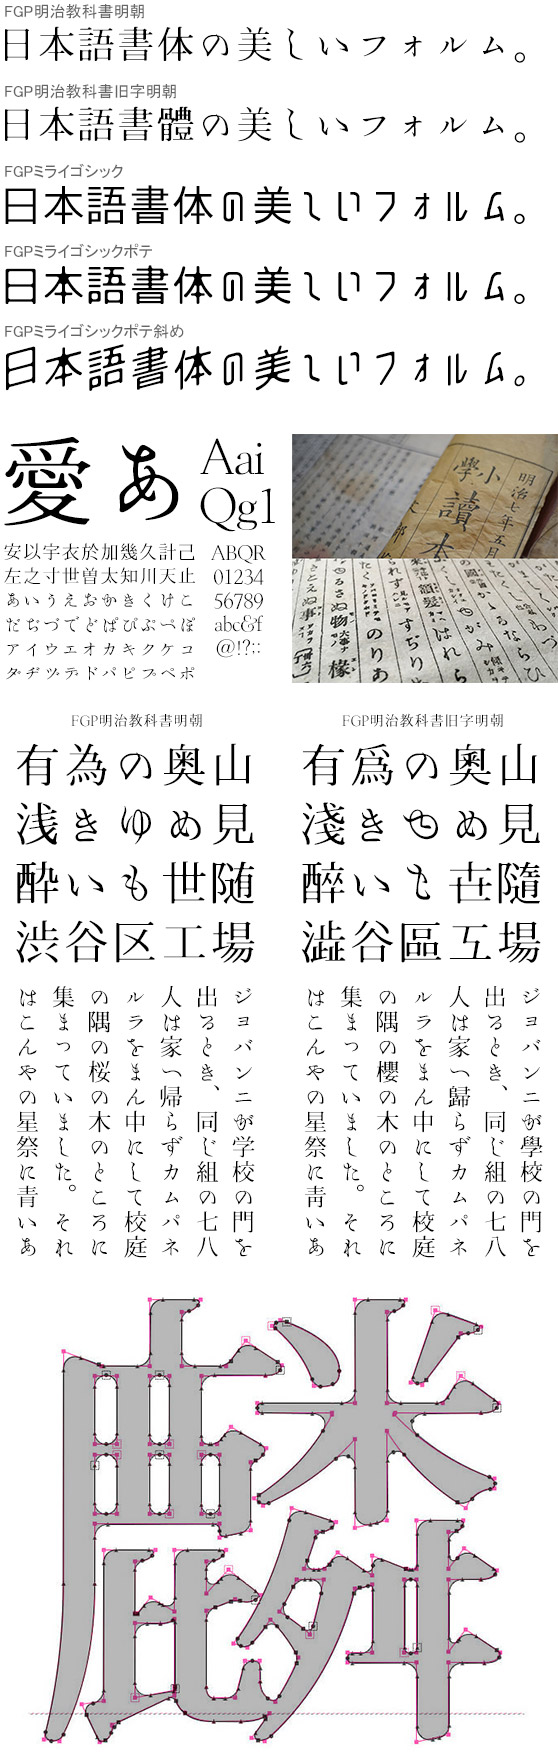 FGP明治教科書明朝&ミライゴシック (旧字 同梱)